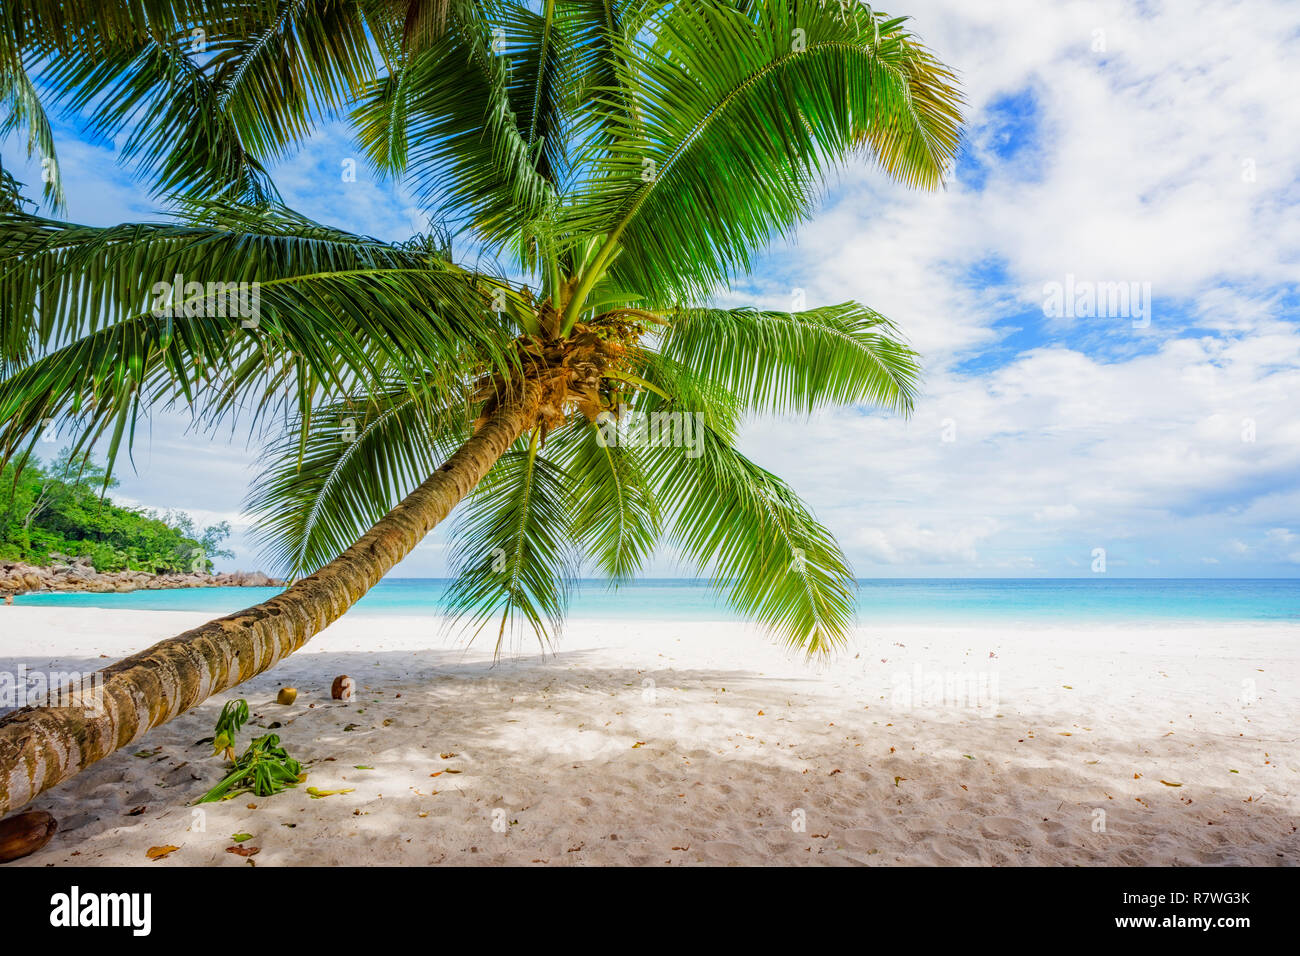 Palmier sur Paradise beach, anse georgette, seychelles Banque D'Images